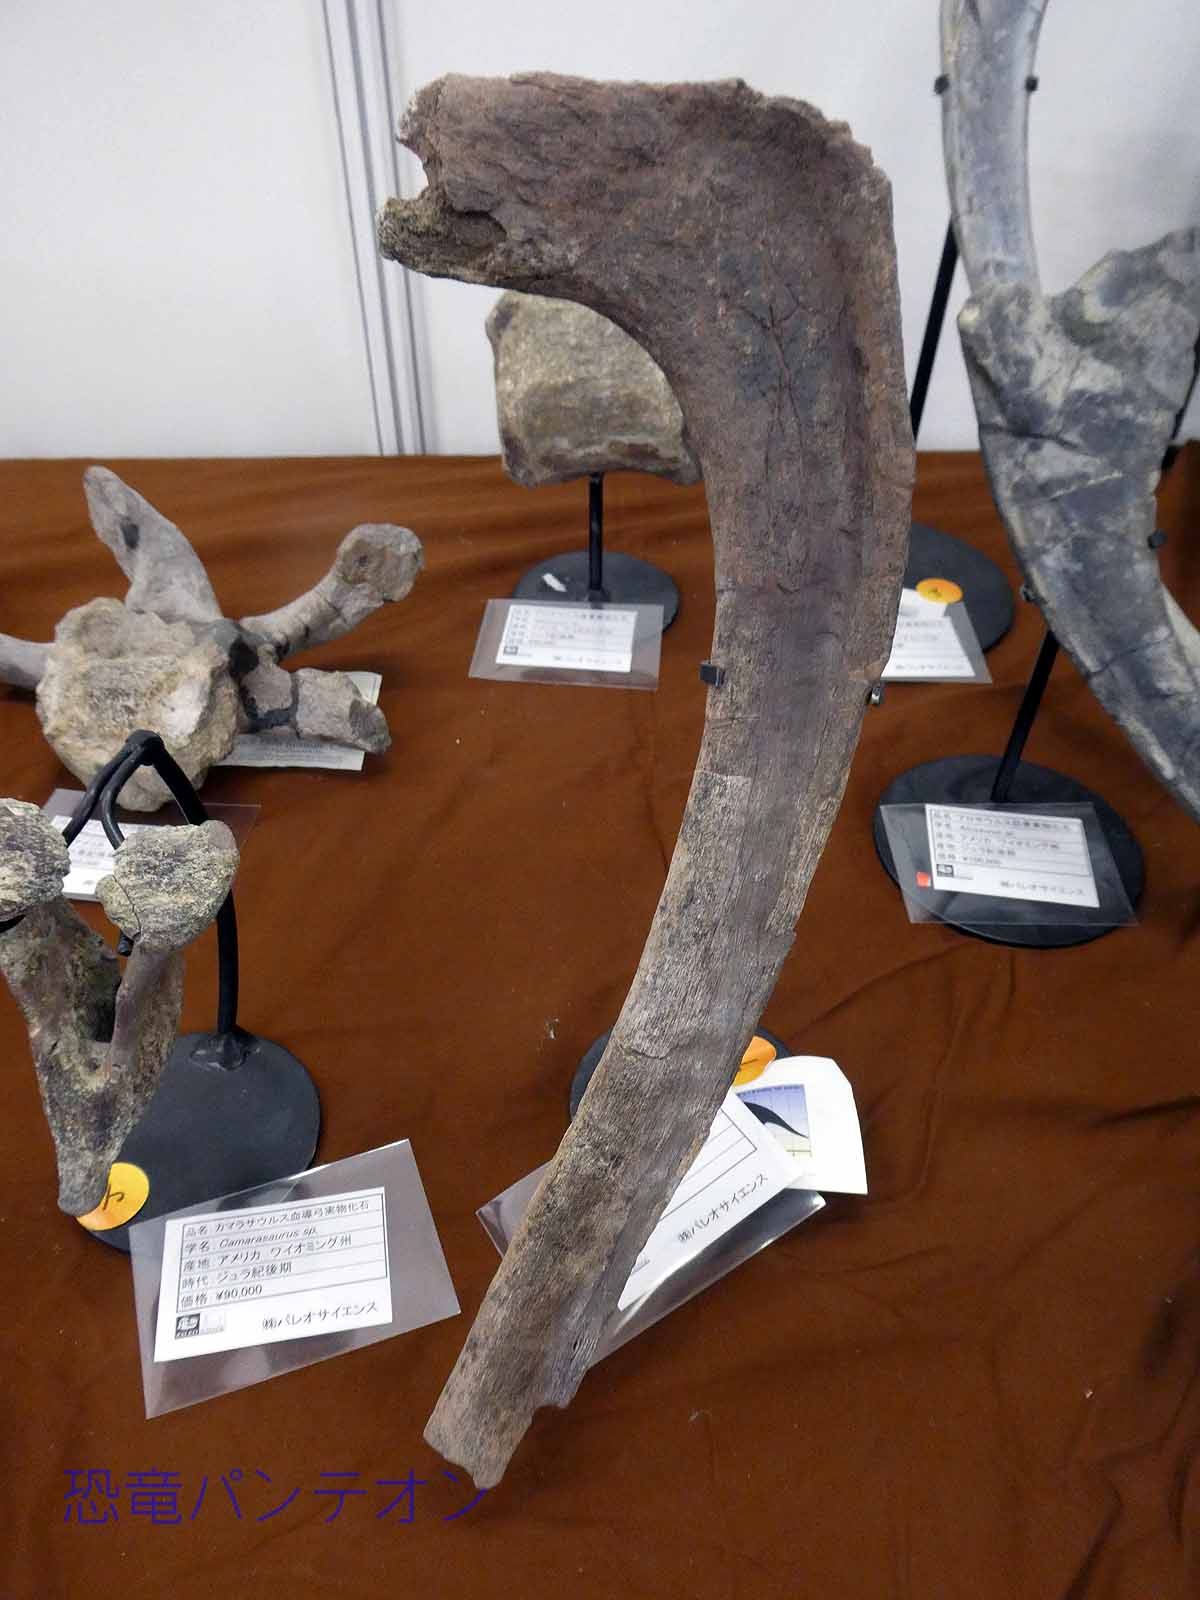 米、モンタナ州産トリケラトプス肋骨化石、大きい方はサウスダコタ州産トリケラトプス肋骨化石と西テキサス産クリトサウルス幼体坐骨、椎骨はモンタナ州産エドモントサウルス